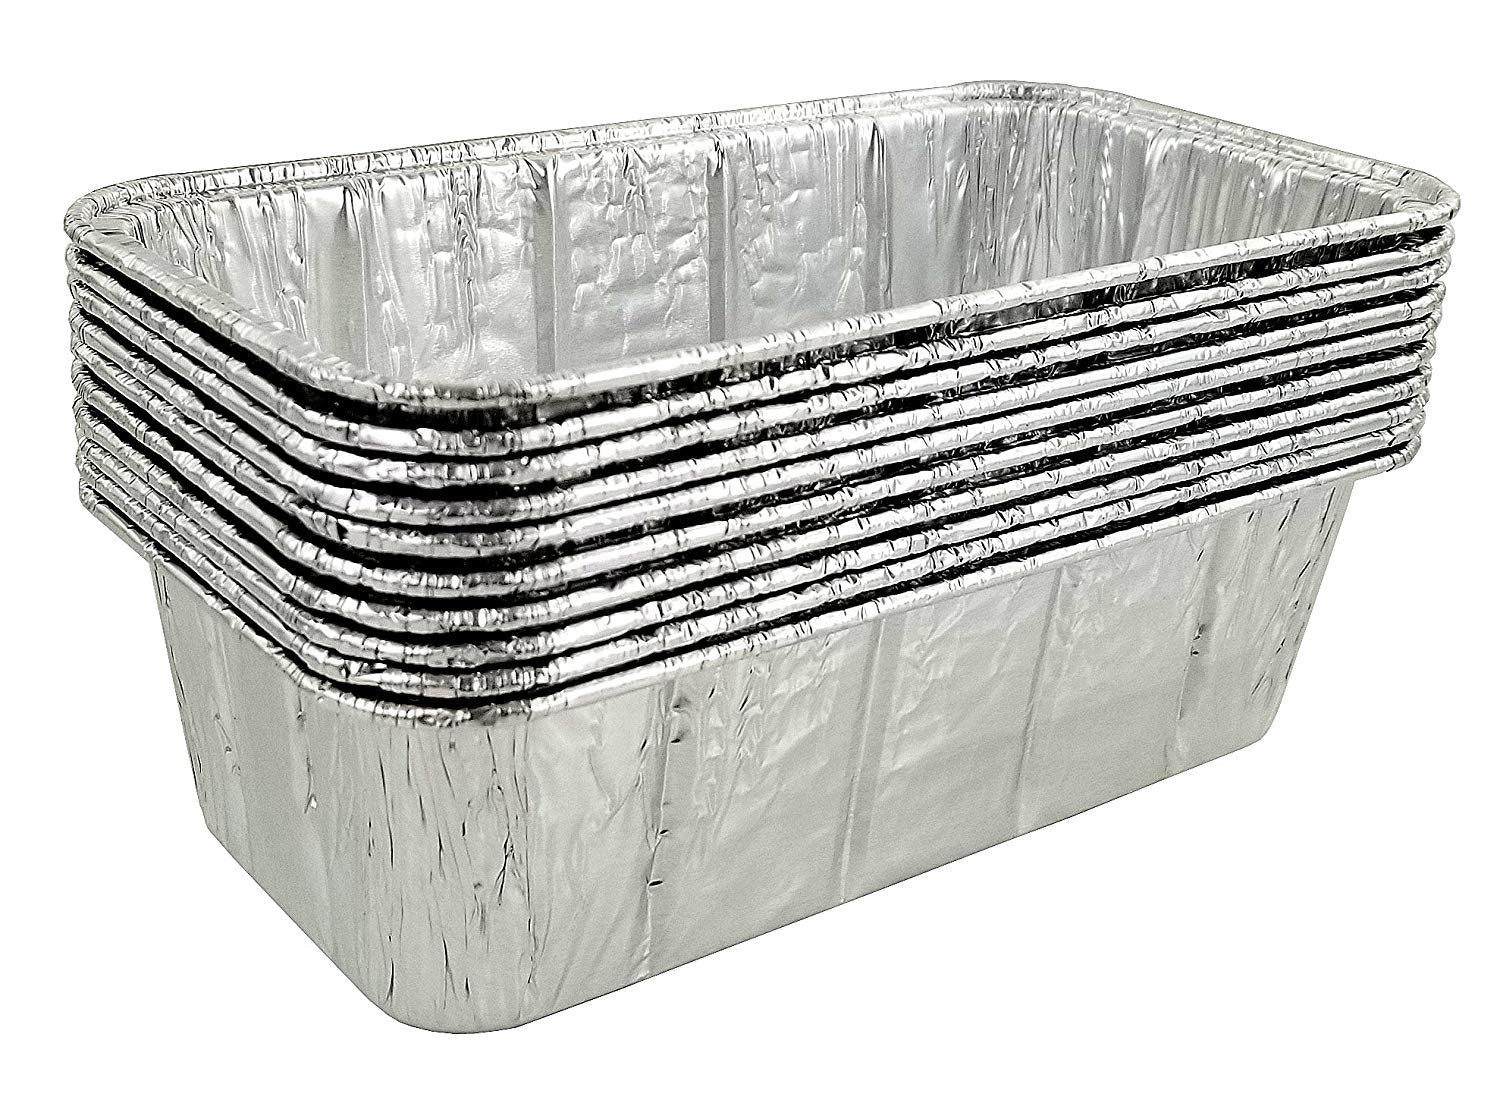 2 1/4 lb. Oblong Black & Gold Aluminum Foil Pans Take Out Heavy Duty  Containers 500/CS